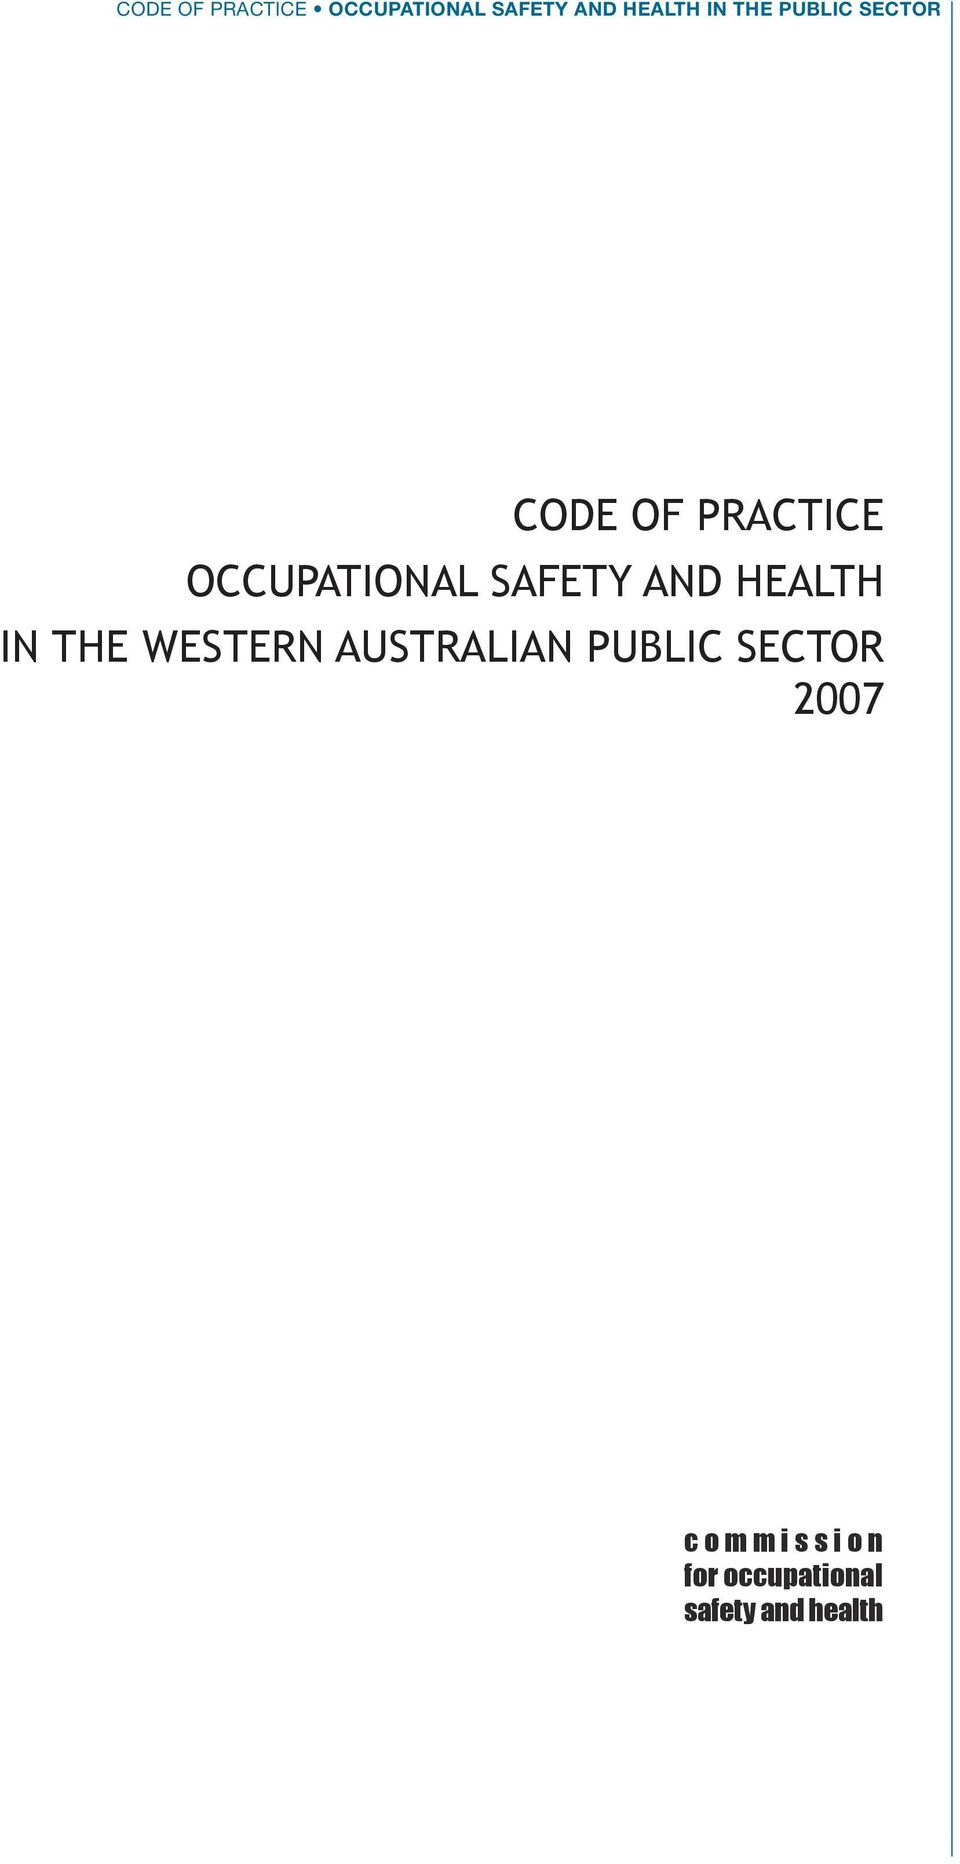 Australian Public SectoR 2007